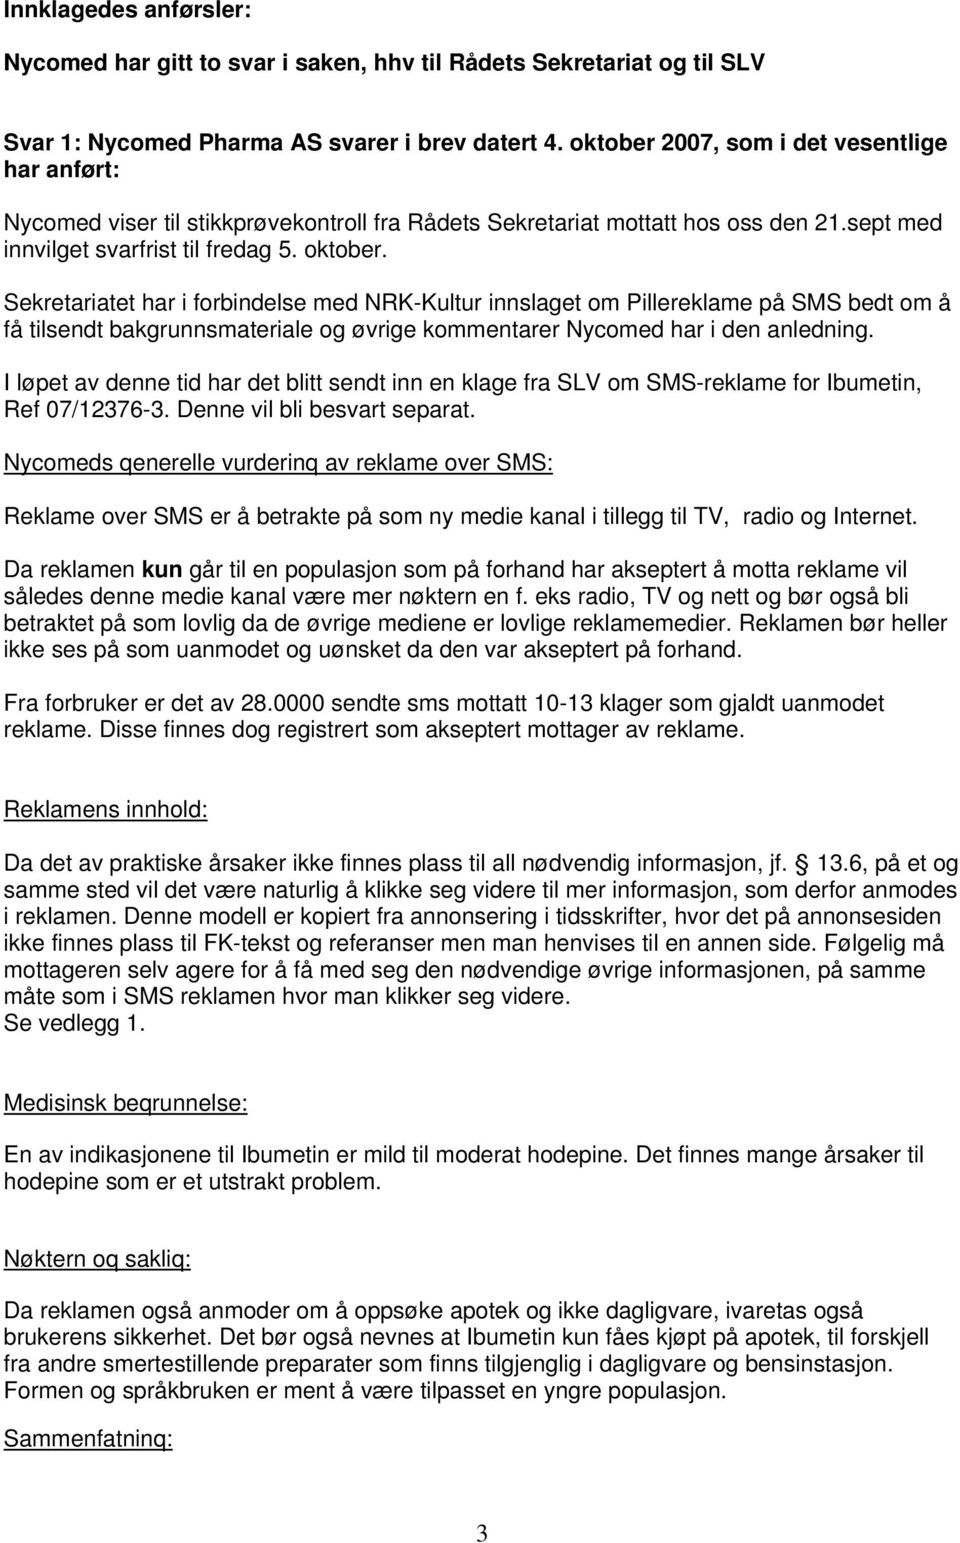 Sekretariatet har i forbindelse med NRK-Kultur innslaget om Pillereklame på SMS bedt om å få tilsendt bakgrunnsmateriale og øvrige kommentarer Nycomed har i den anledning.